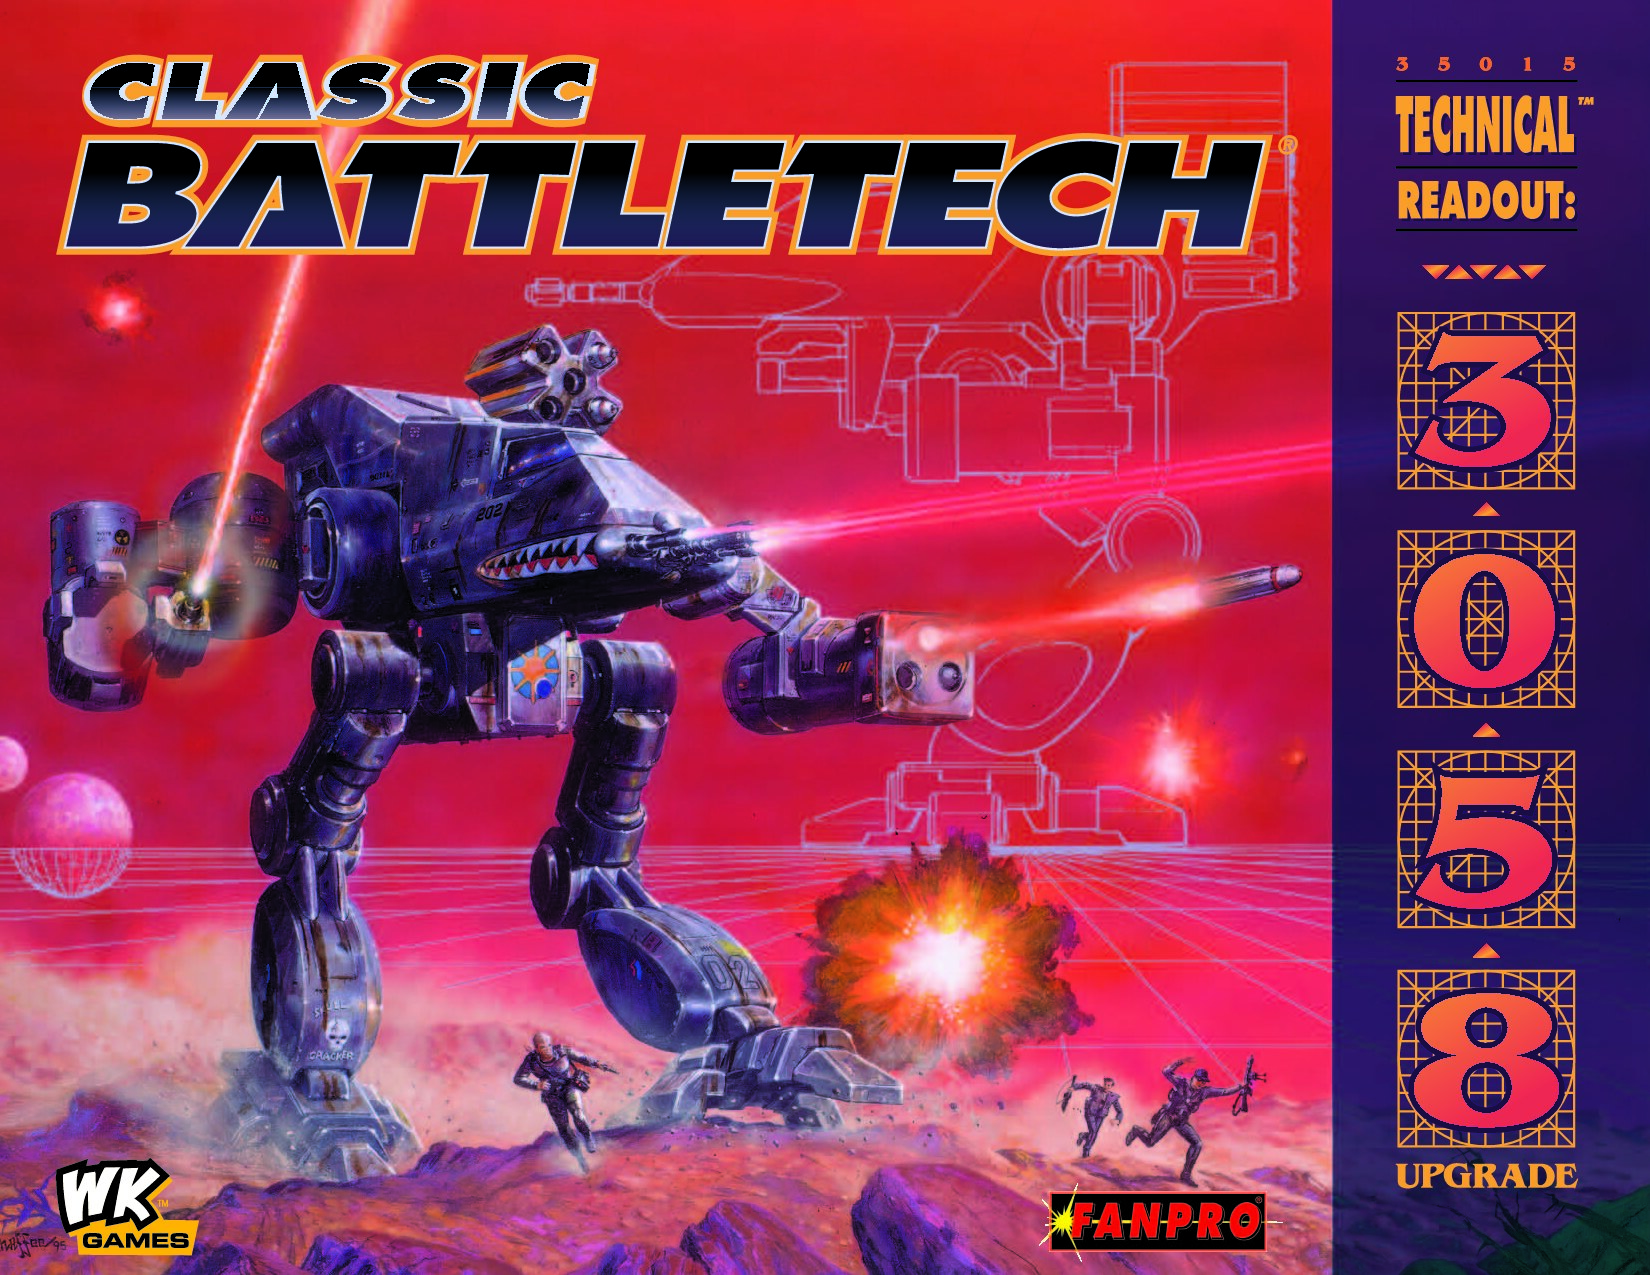 Classic Battletech Technical Readout: 3058 Upgrade